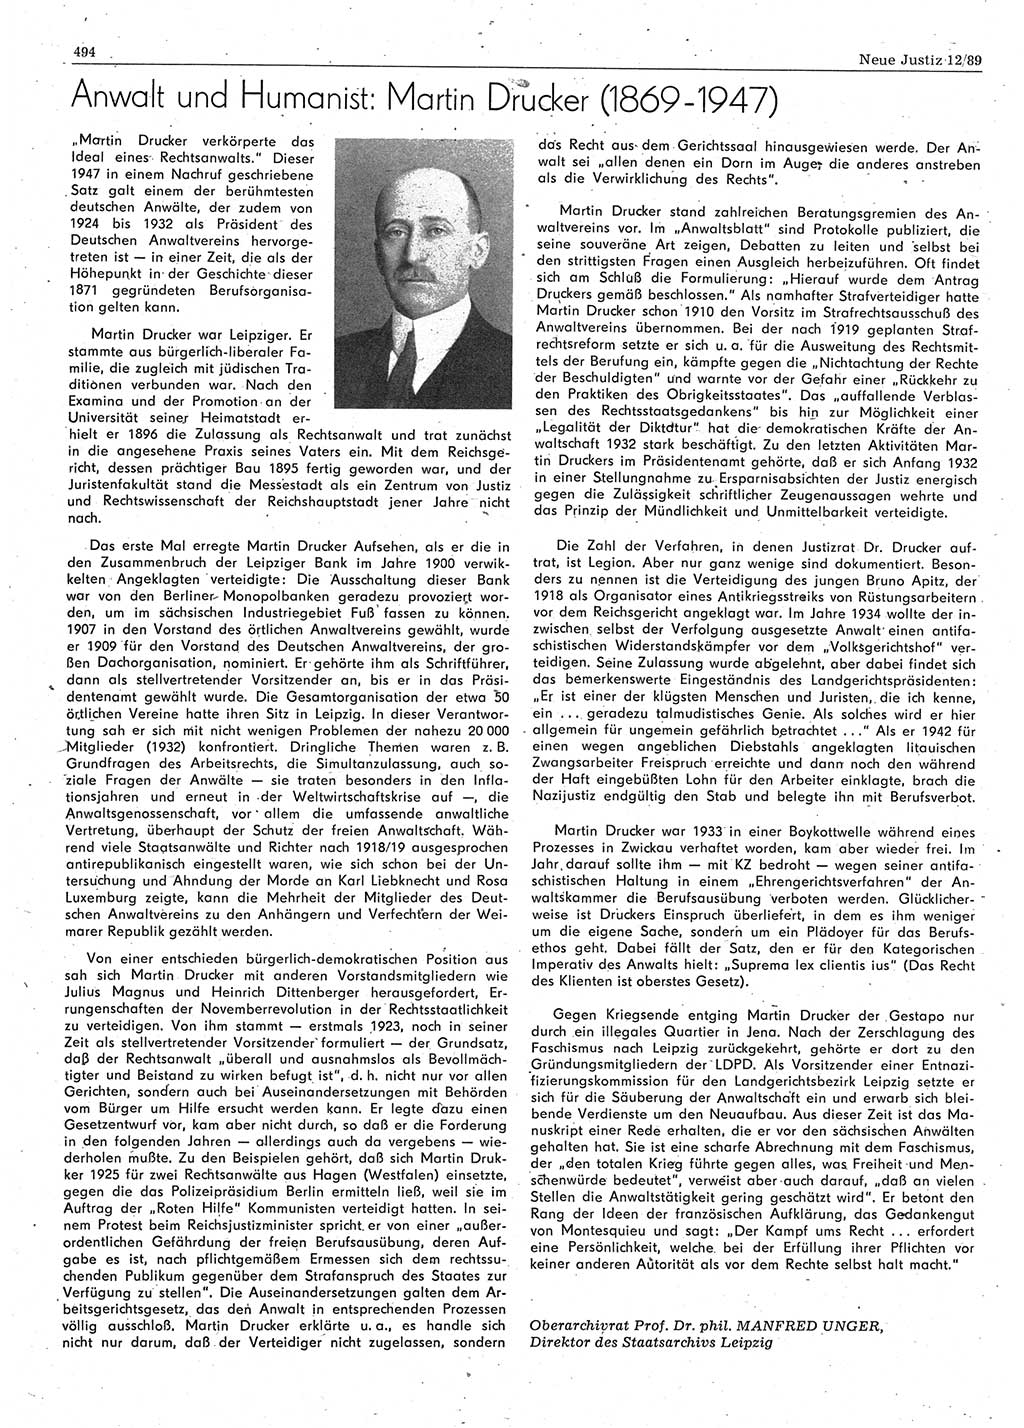 Neue Justiz (NJ), Zeitschrift für sozialistisches Recht und Gesetzlichkeit [Deutsche Demokratische Republik (DDR)], 43. Jahrgang 1989, Seite 494 (NJ DDR 1989, S. 494)